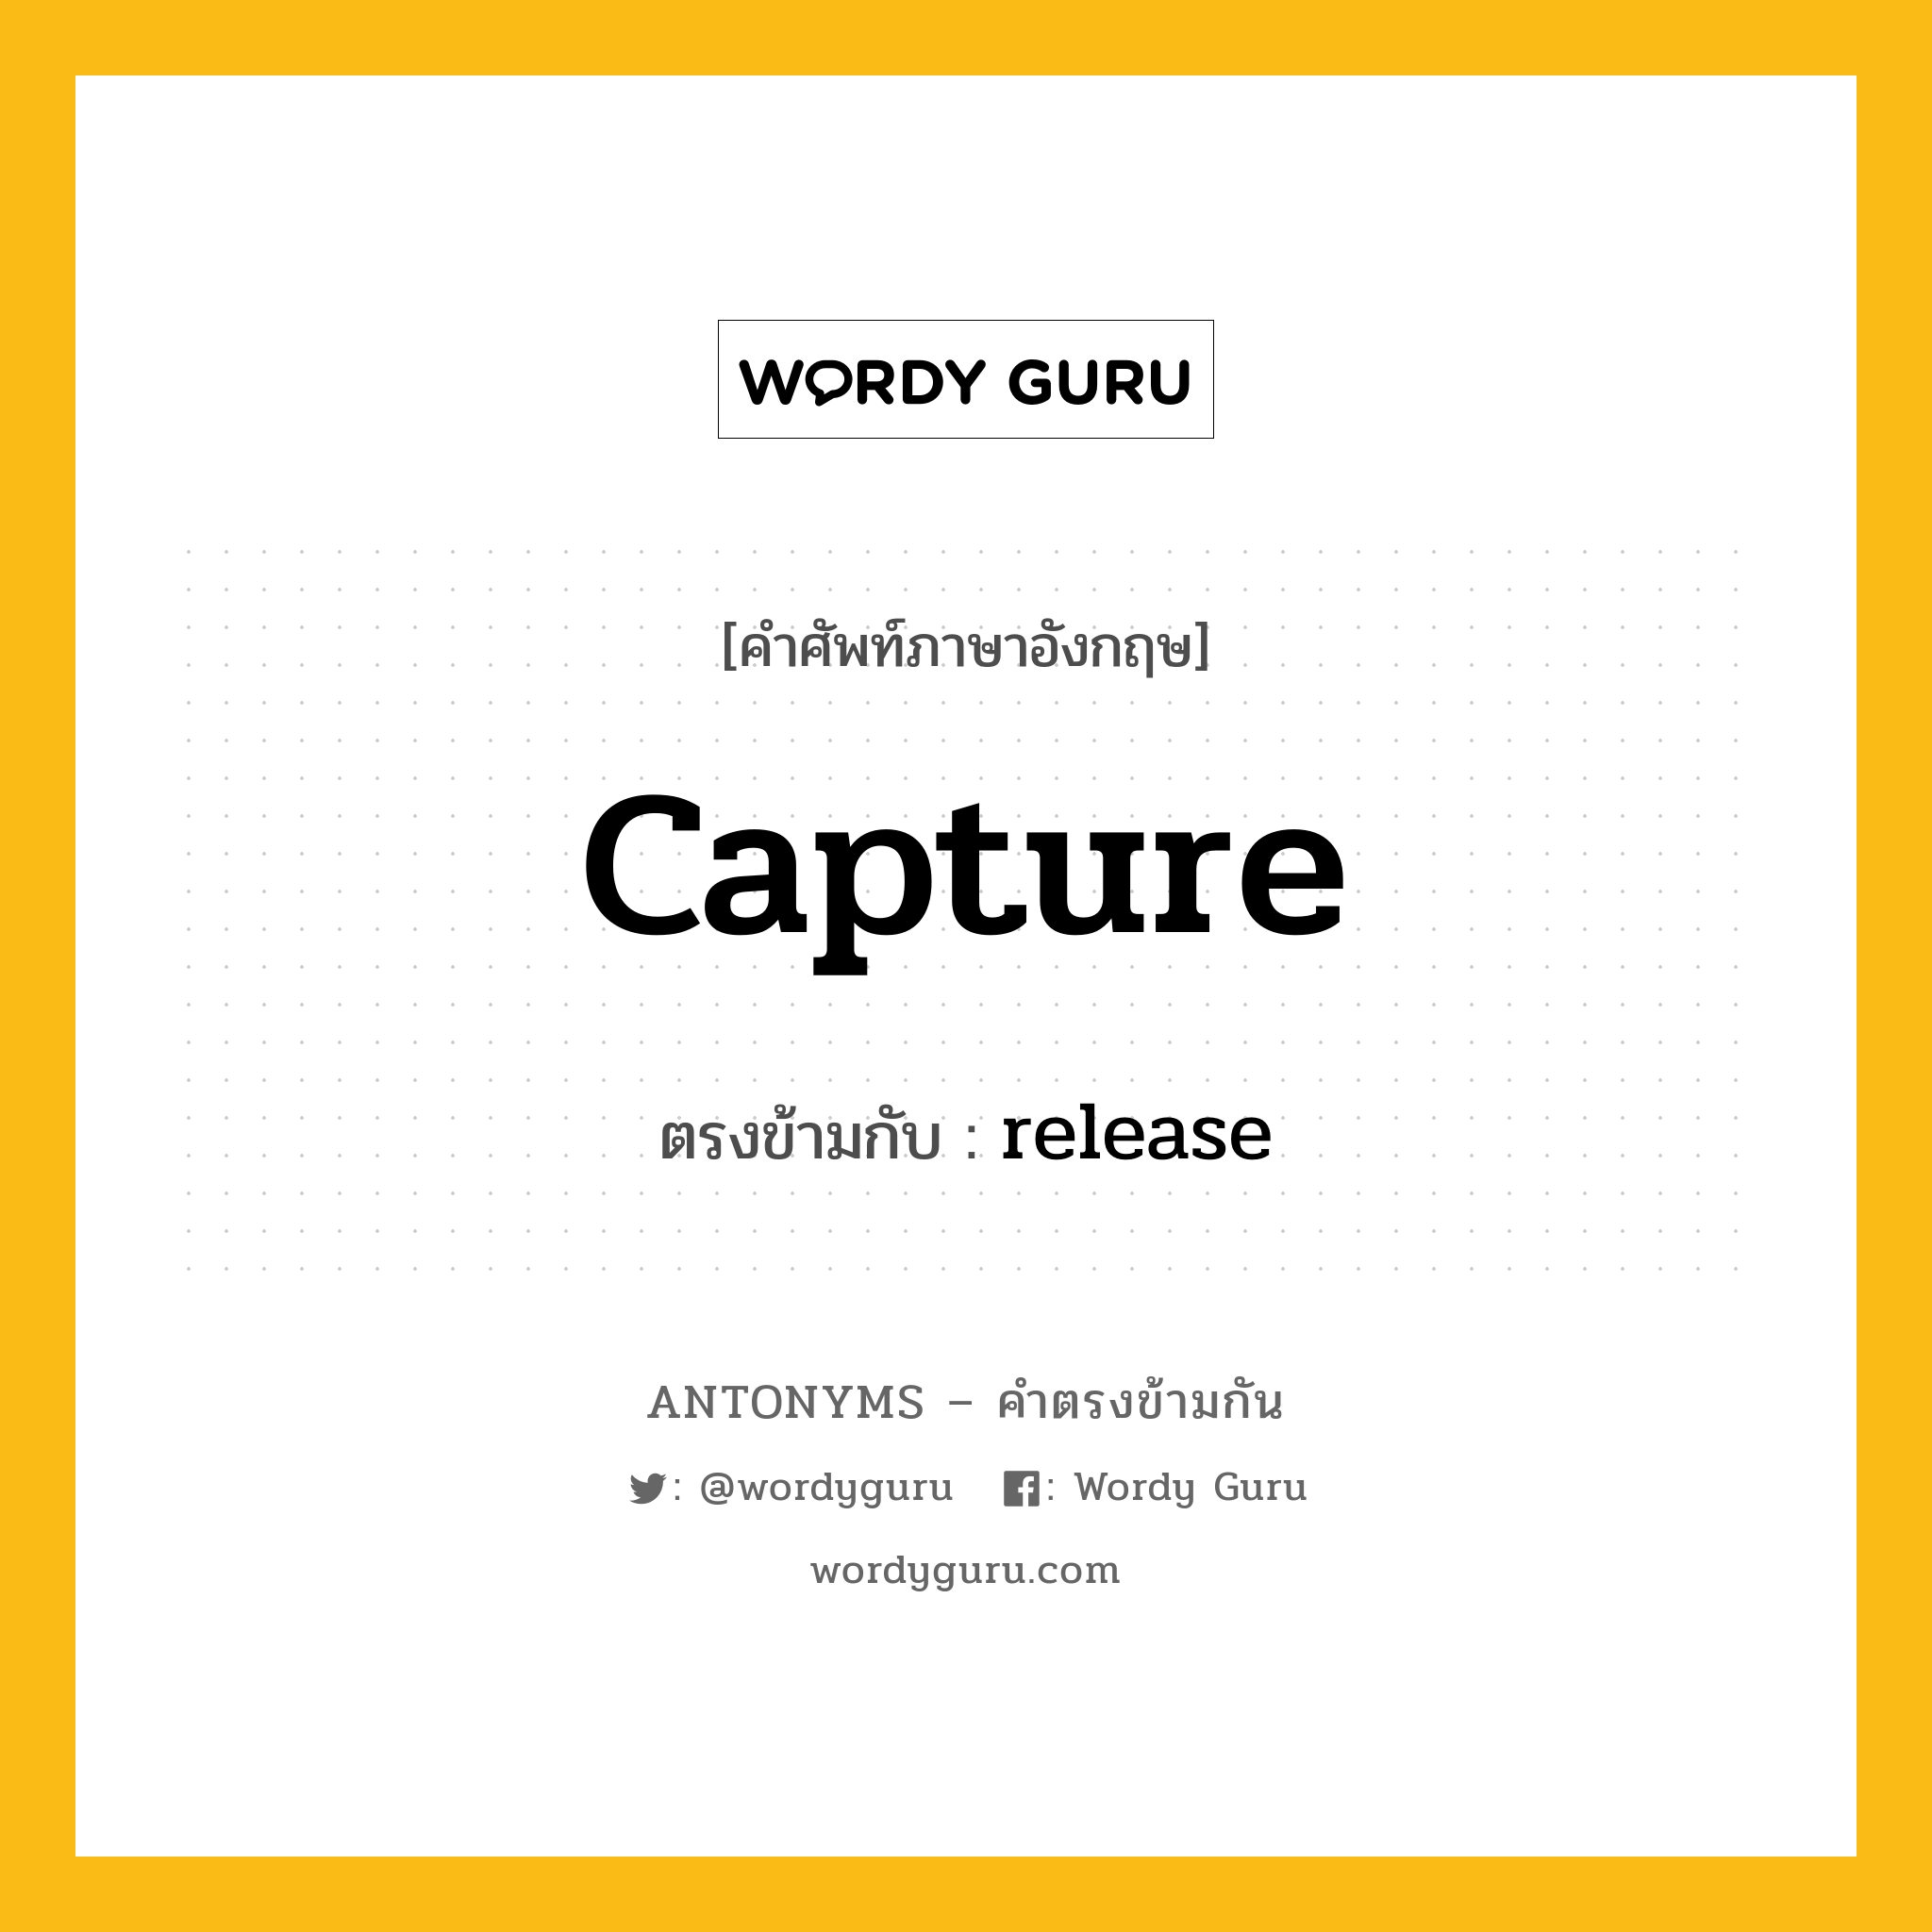 capture เป็นคำตรงข้ามกับคำไหนบ้าง?, คำศัพท์ภาษาอังกฤษ capture ตรงข้ามกับ release หมวด release